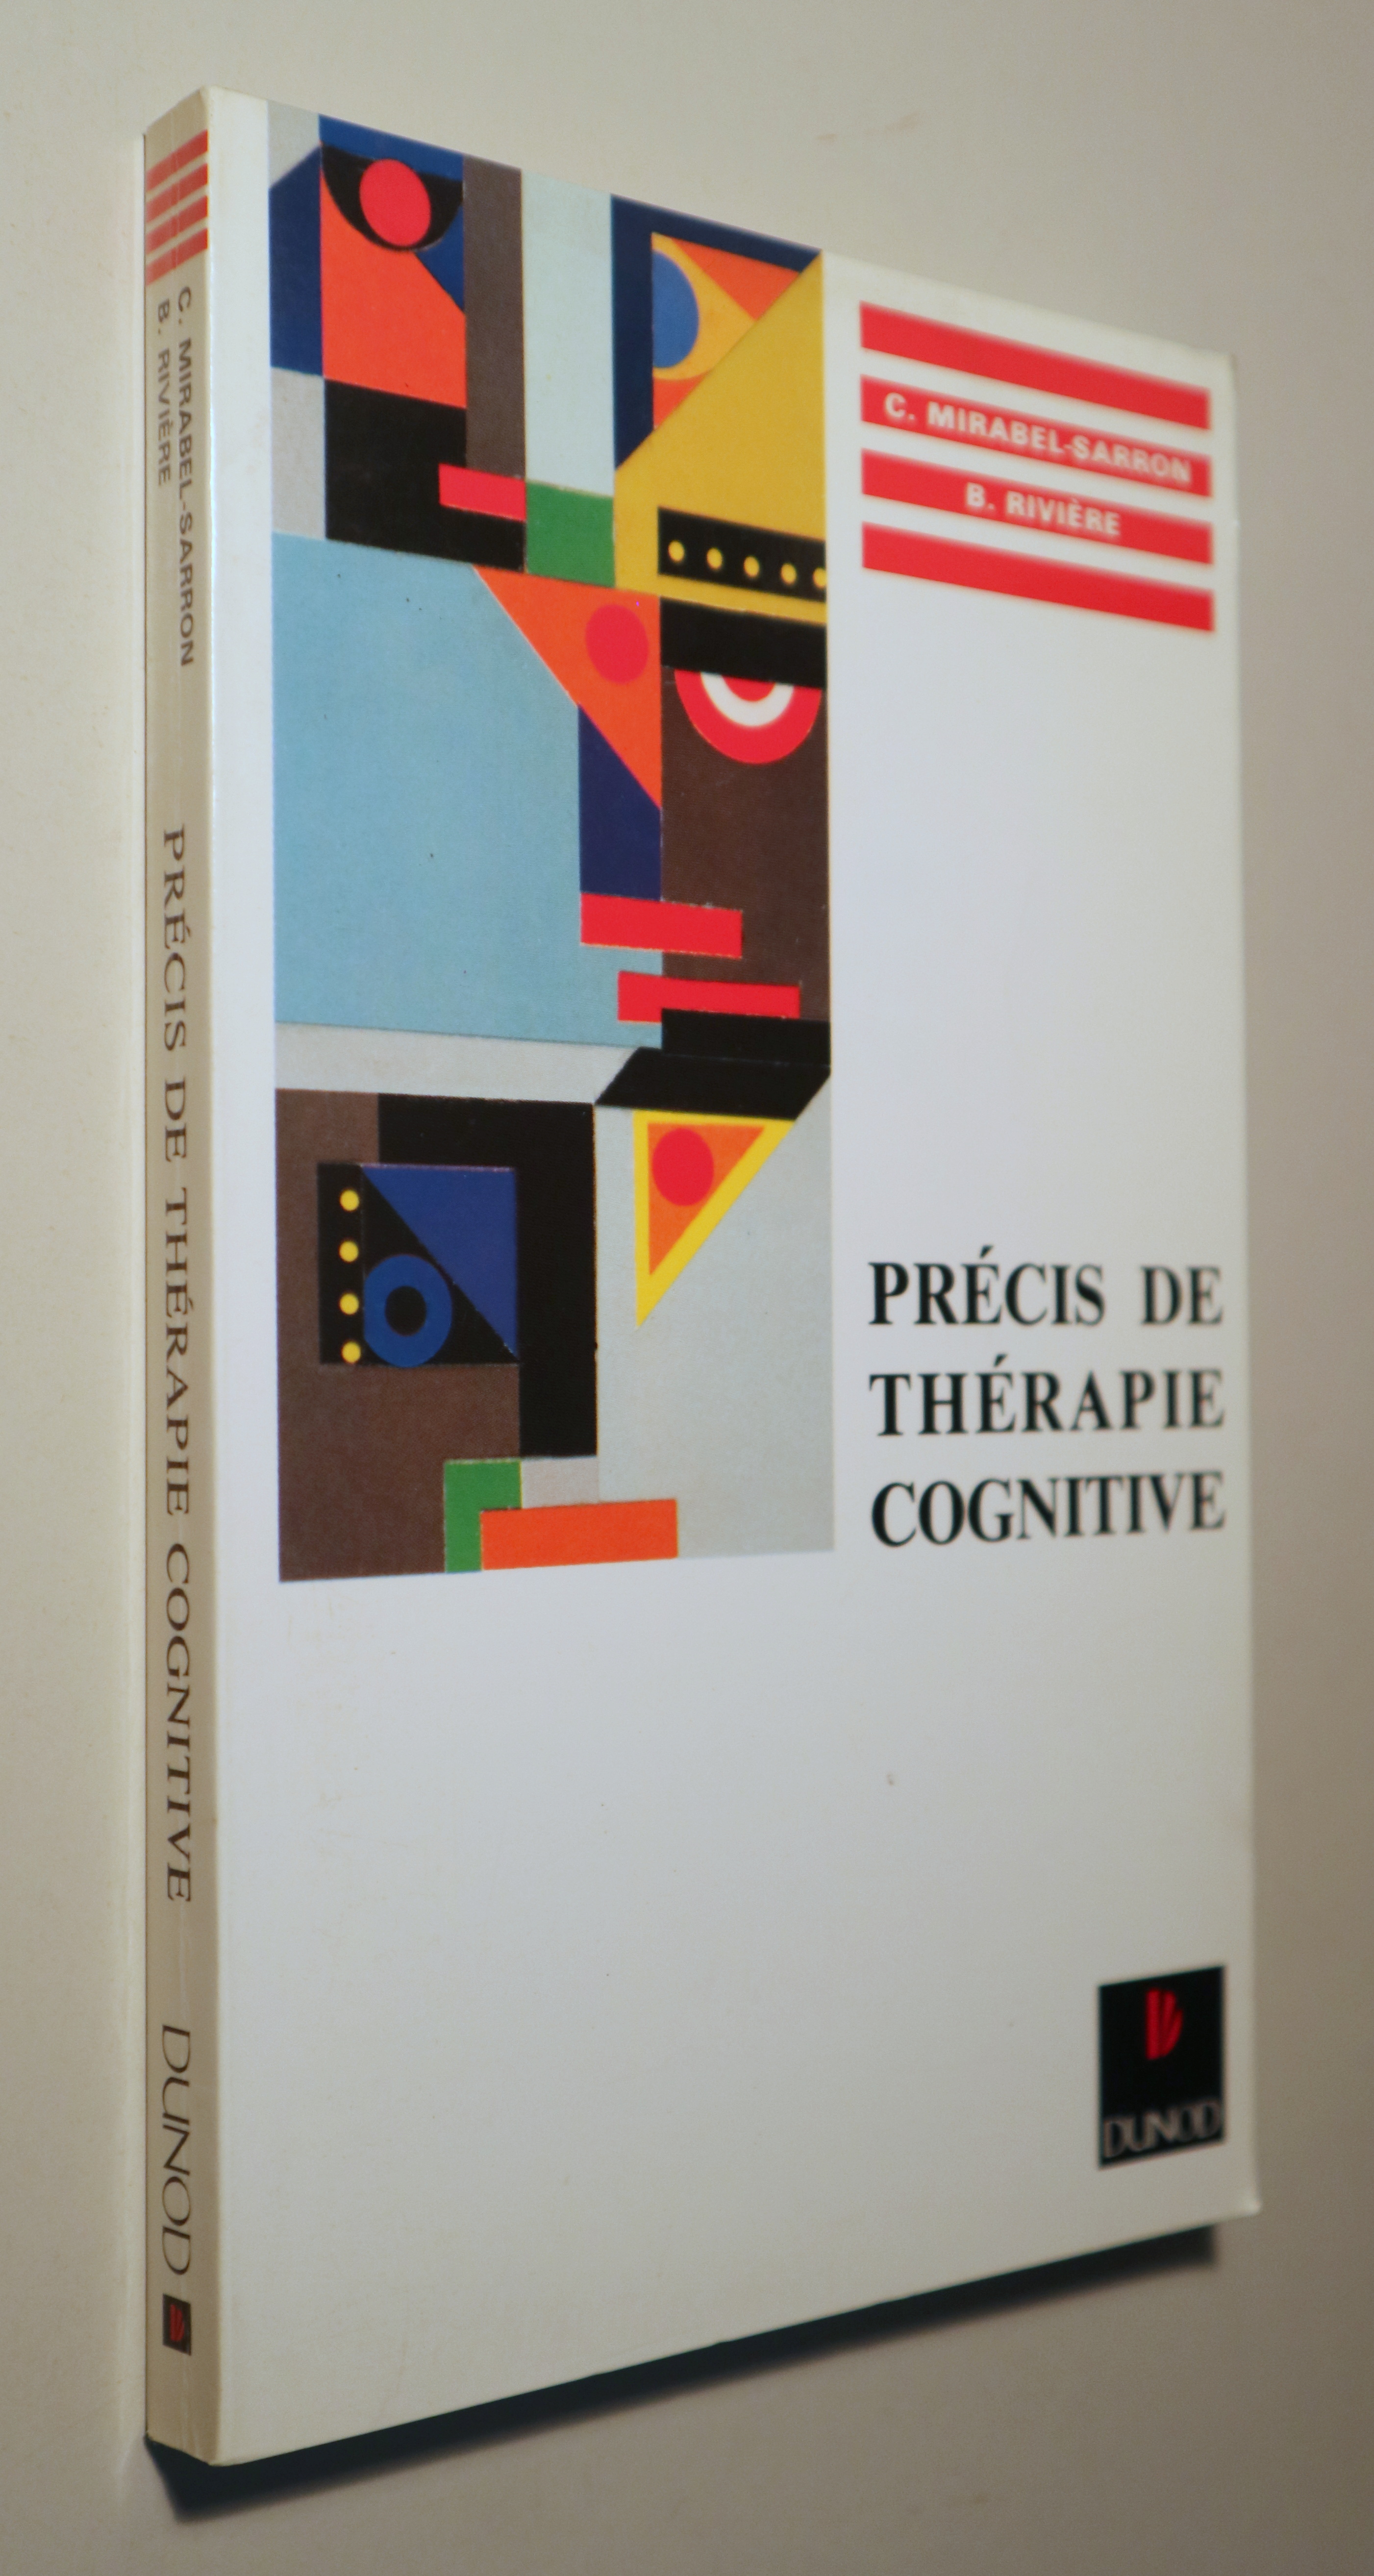 PRÉCIS DE THÉRAPIE COGNITIVE - Paris 1996